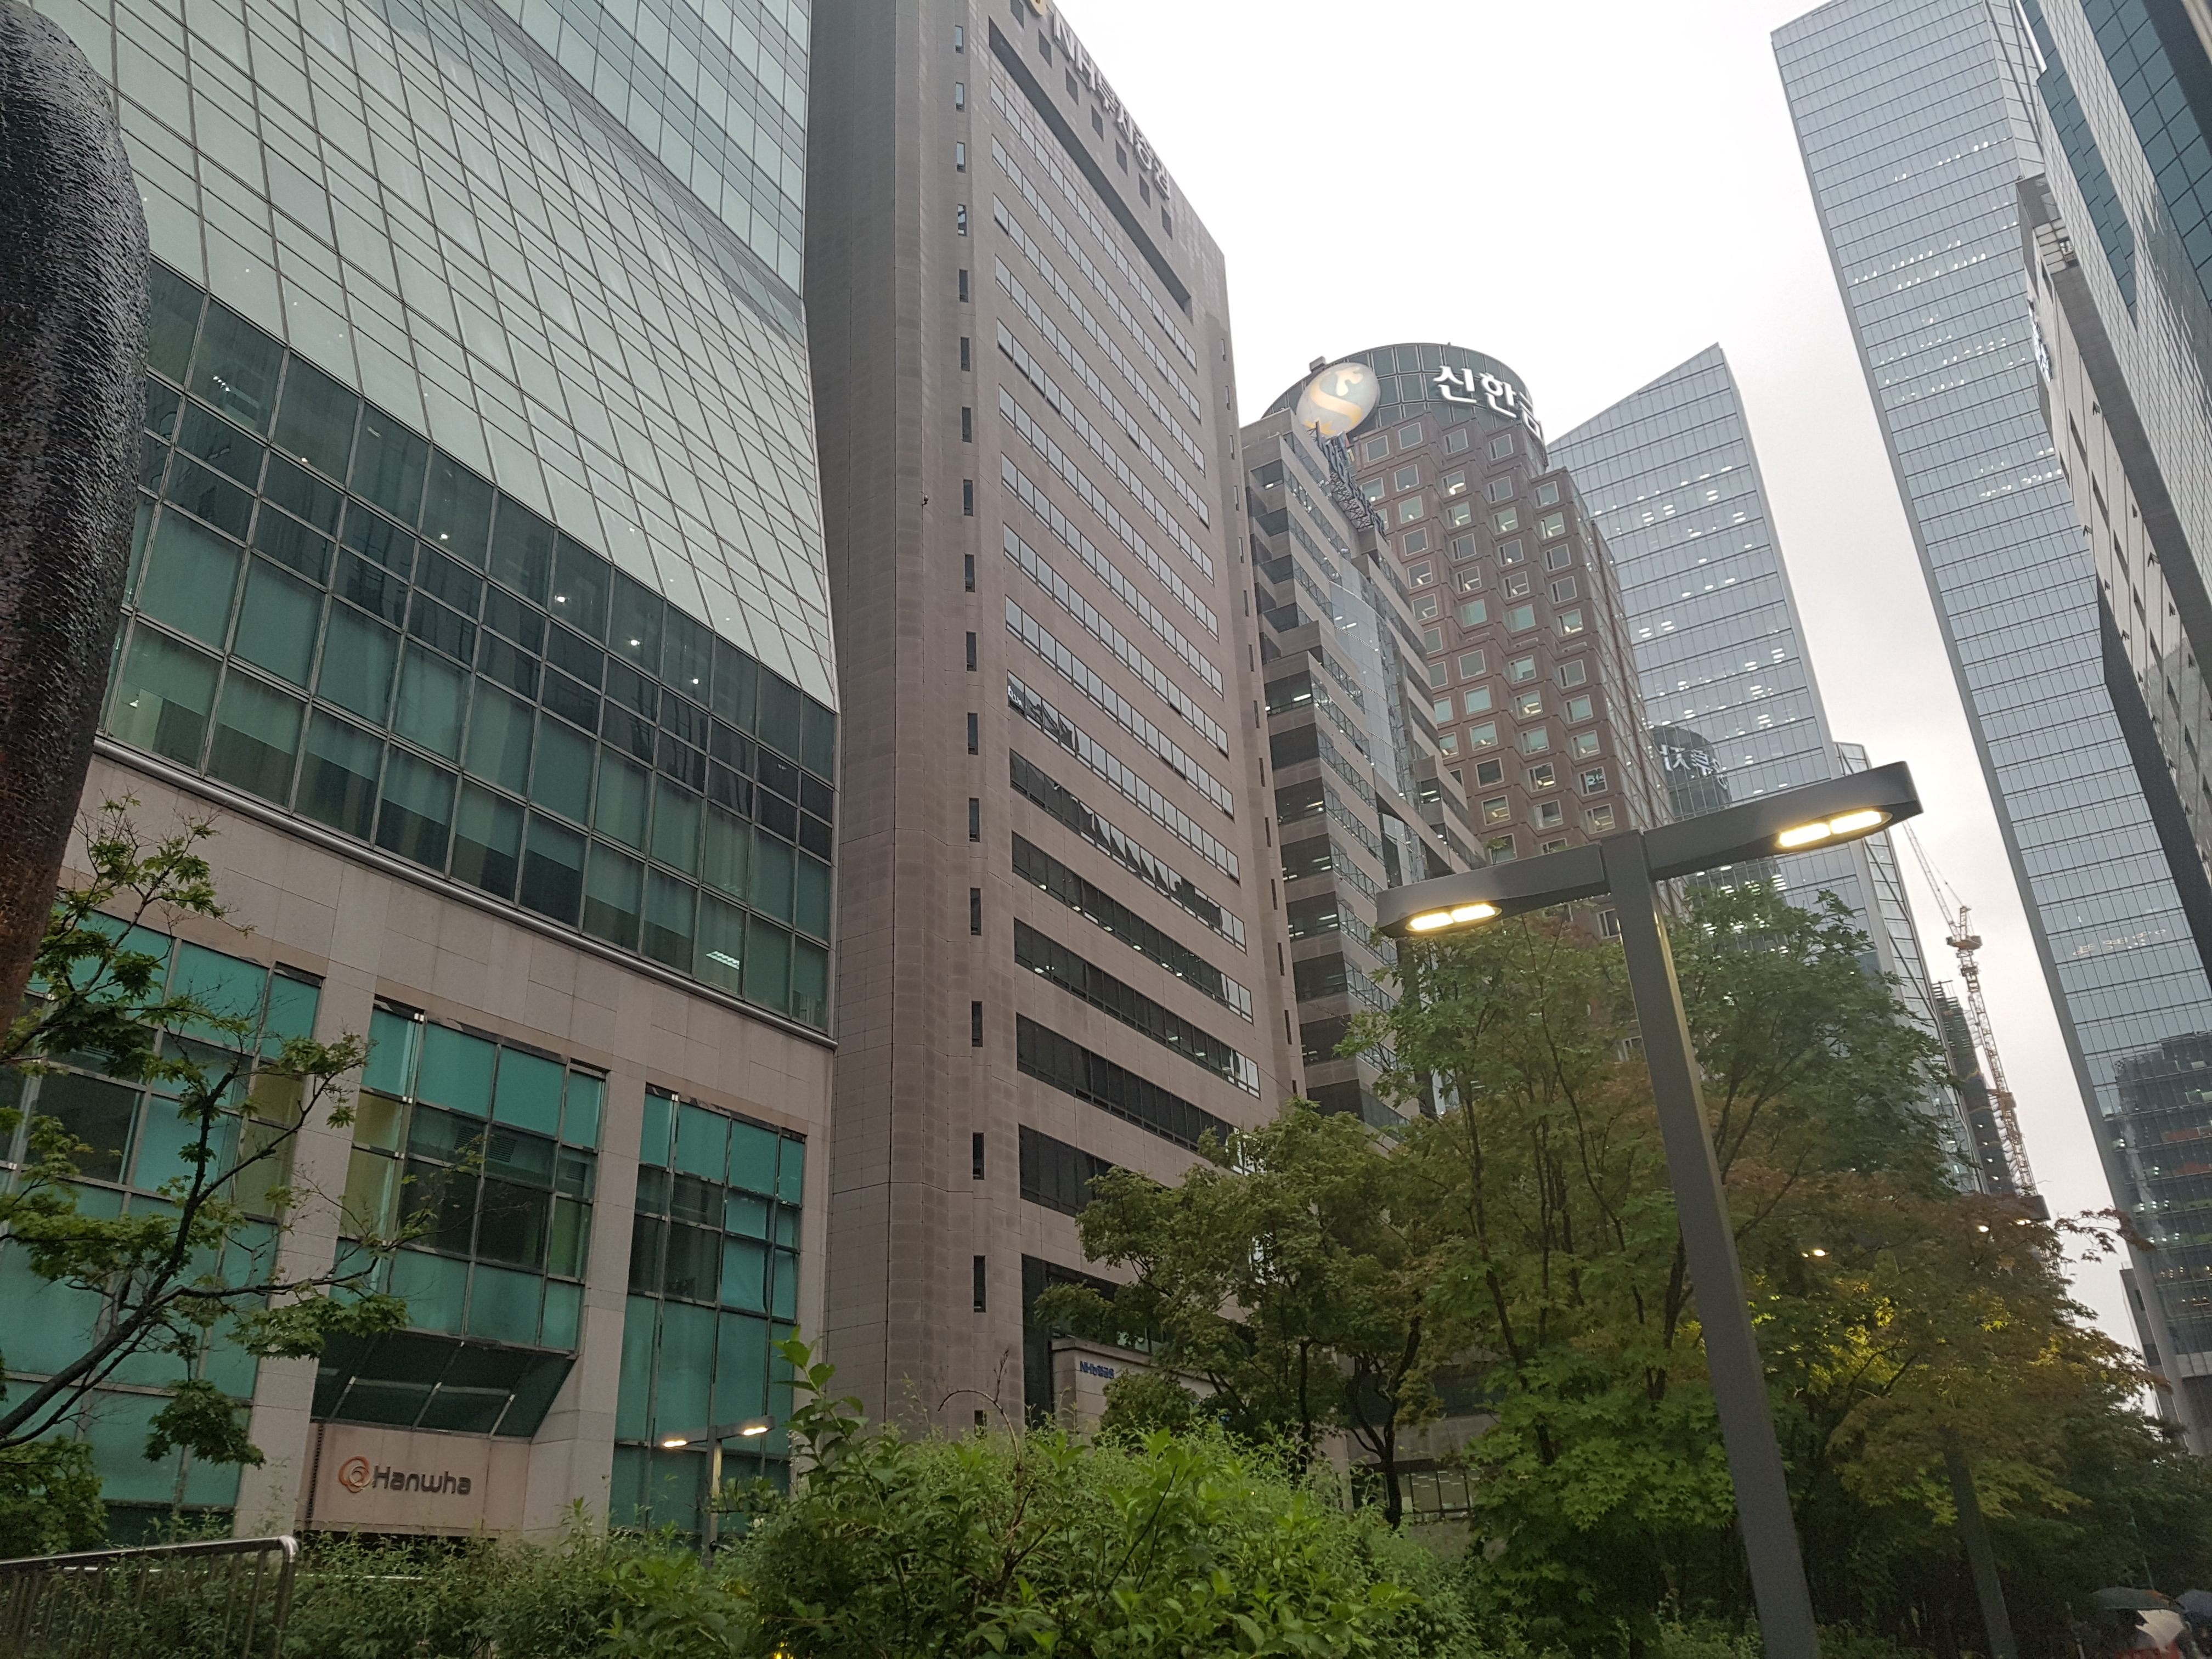 왼쪽부터 한화투자증권, NH투자증권, KTB투자증권, 신한금융투자 본사 건물.